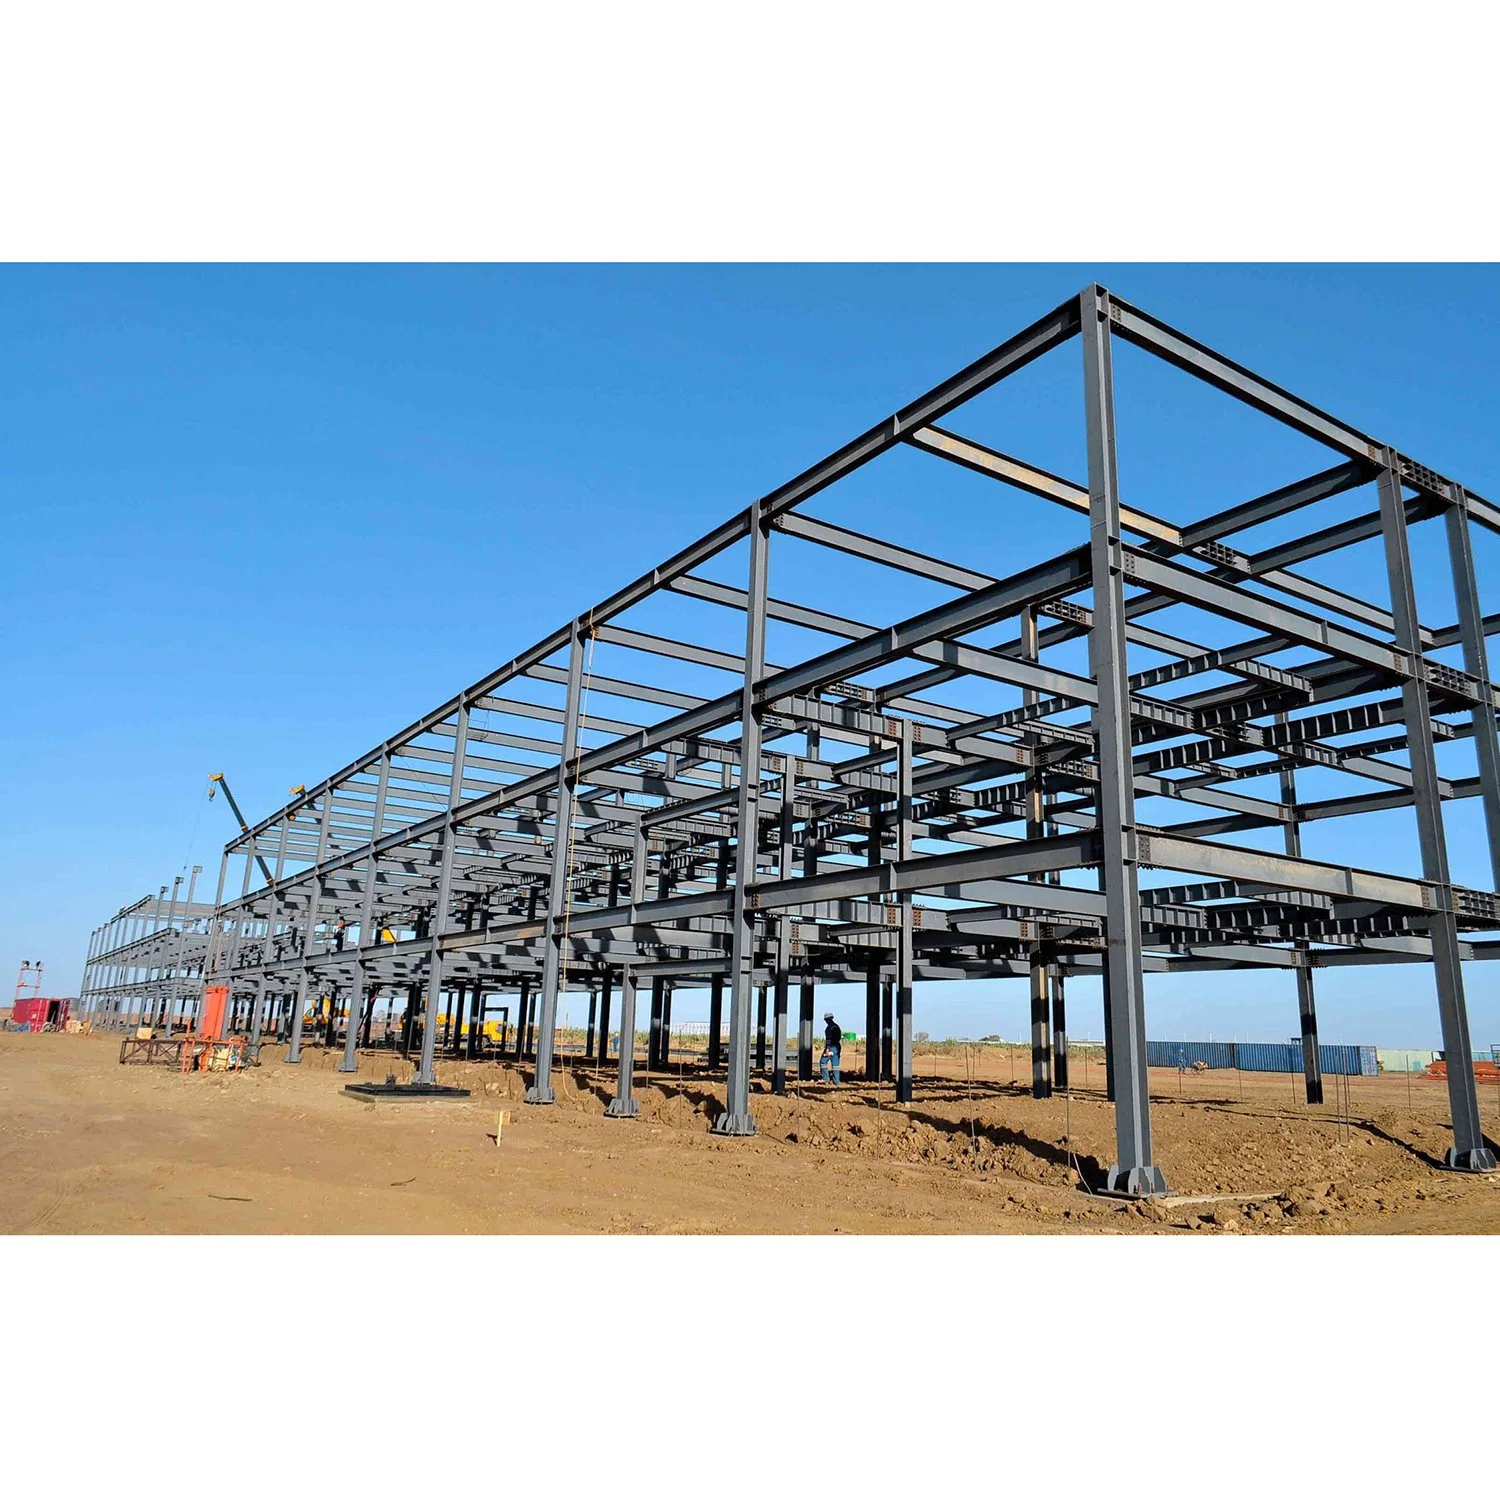 Large Span Steel Workshop Hangar Structure Prefab Metal Shop